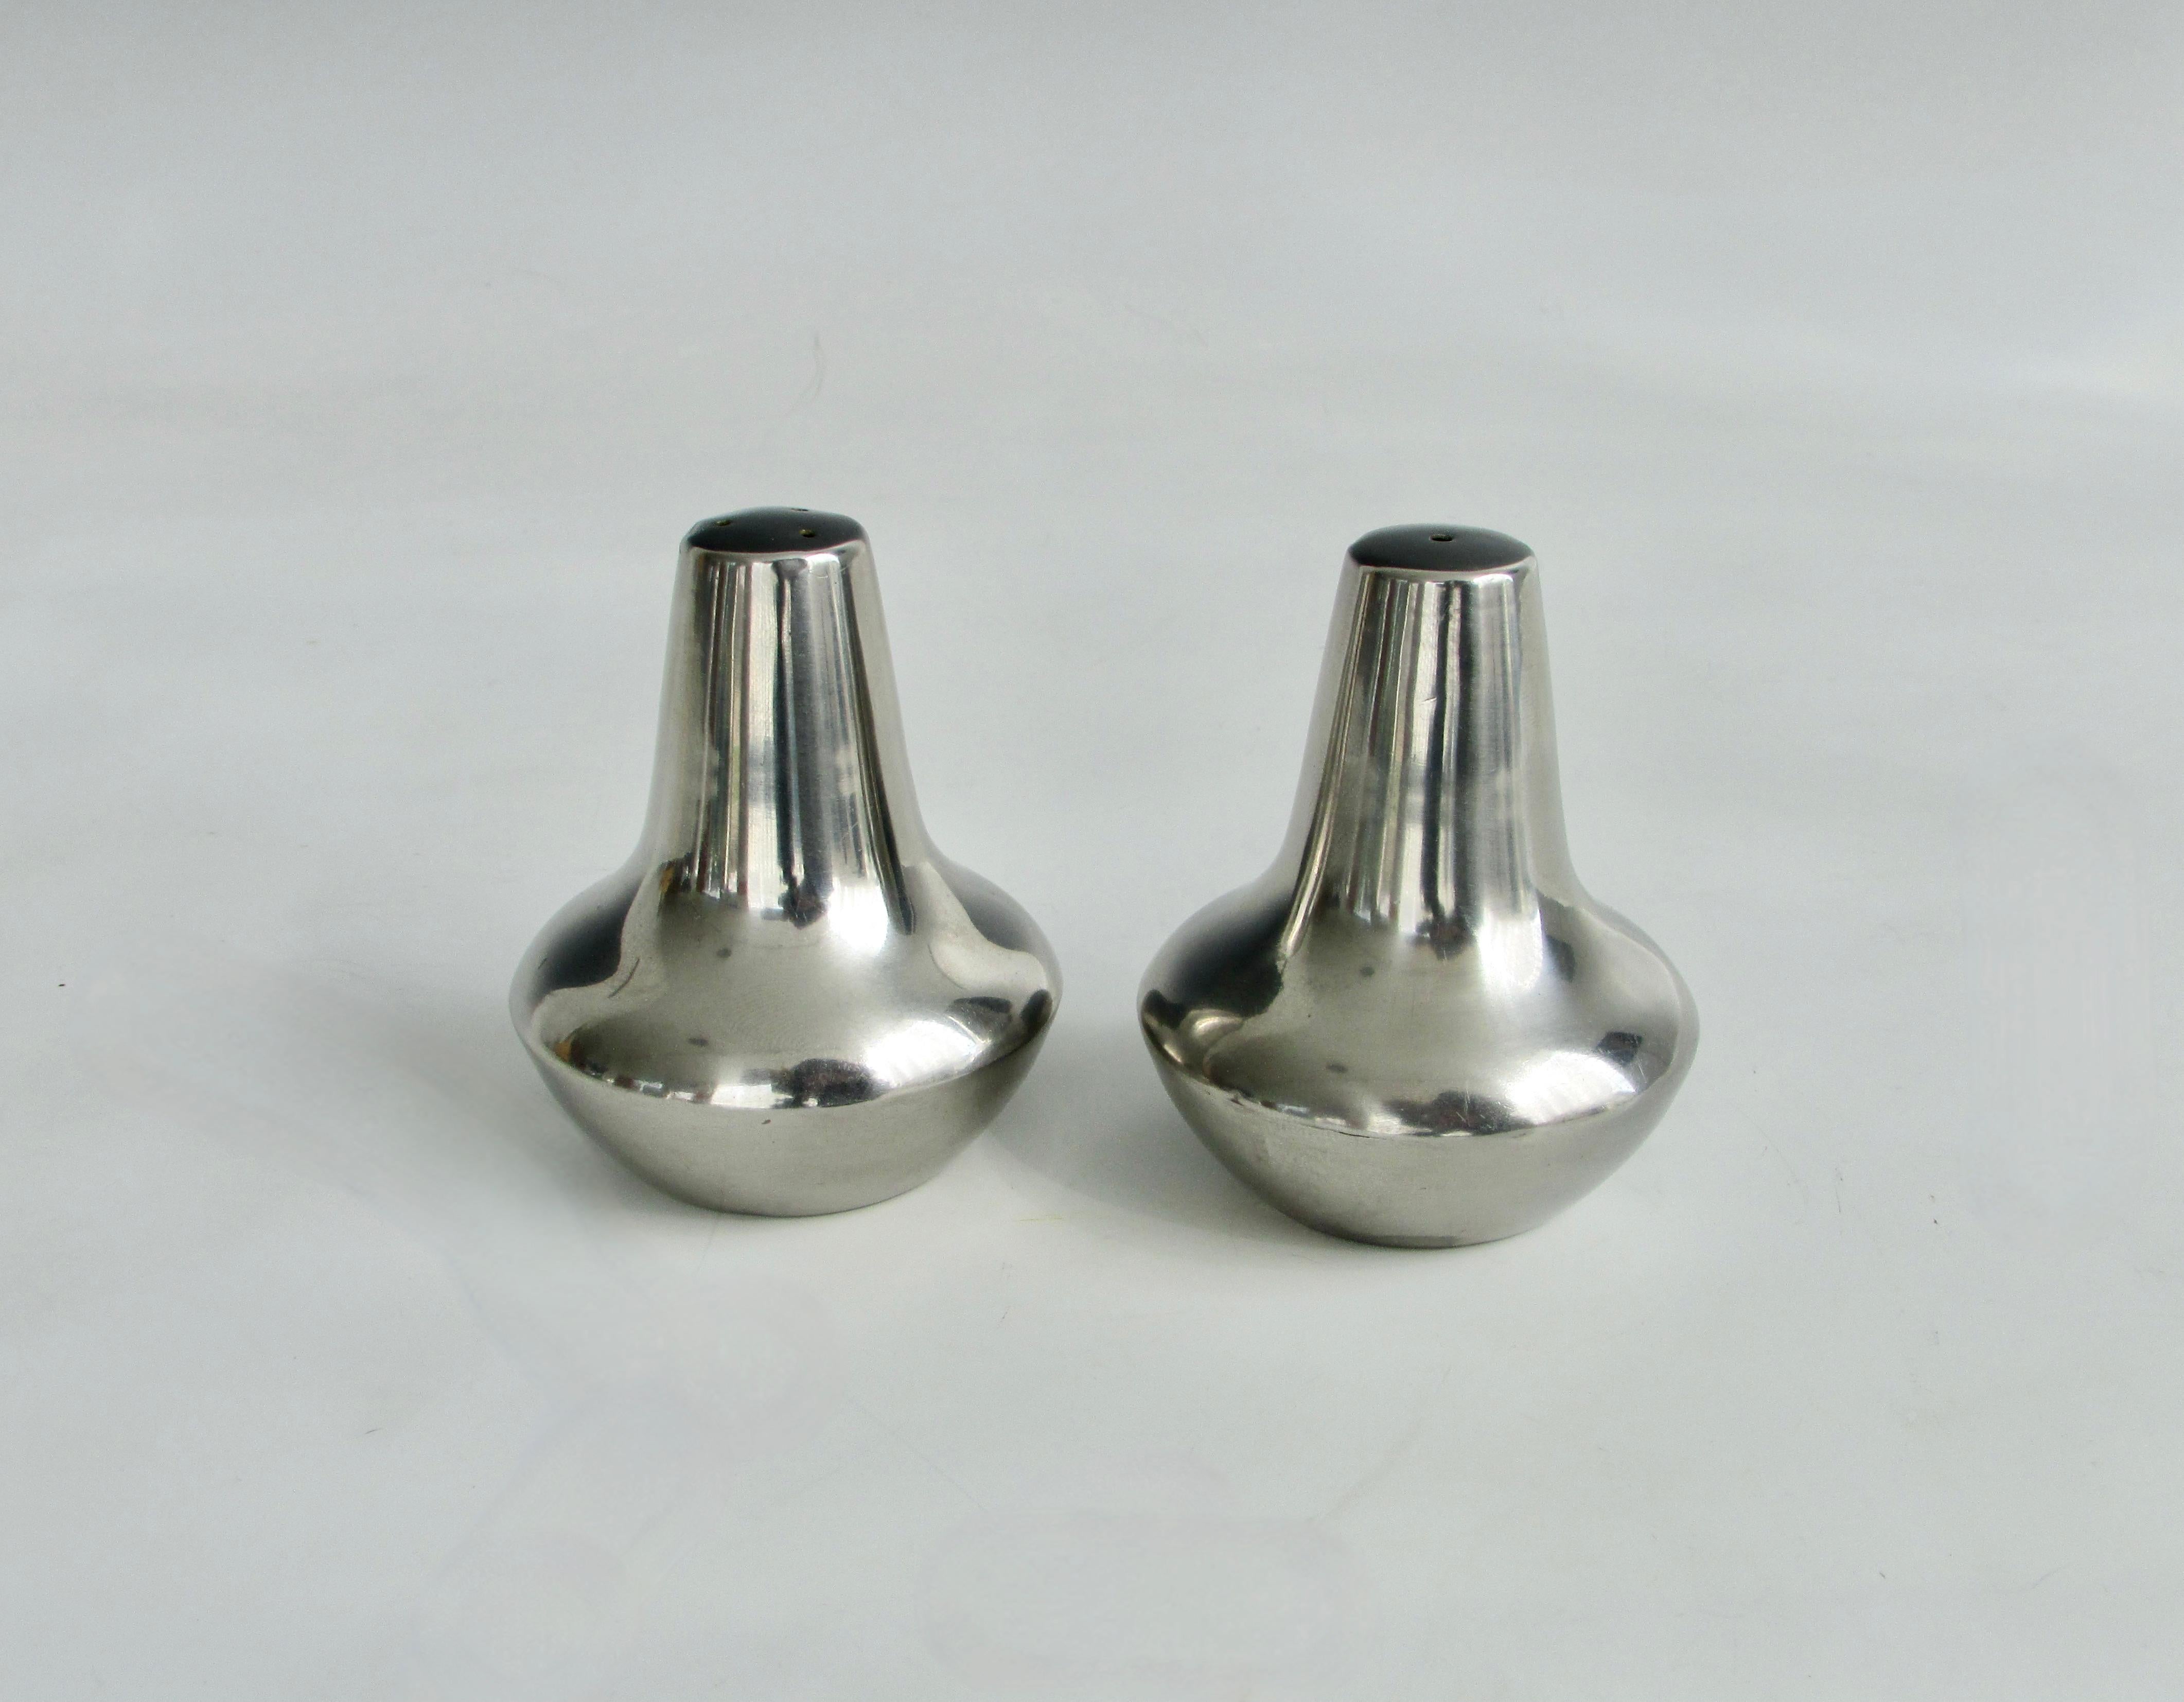 Pair of bulbous based modernist salt and pepper shakers. Marked 18/8 stainless steel Denmark.